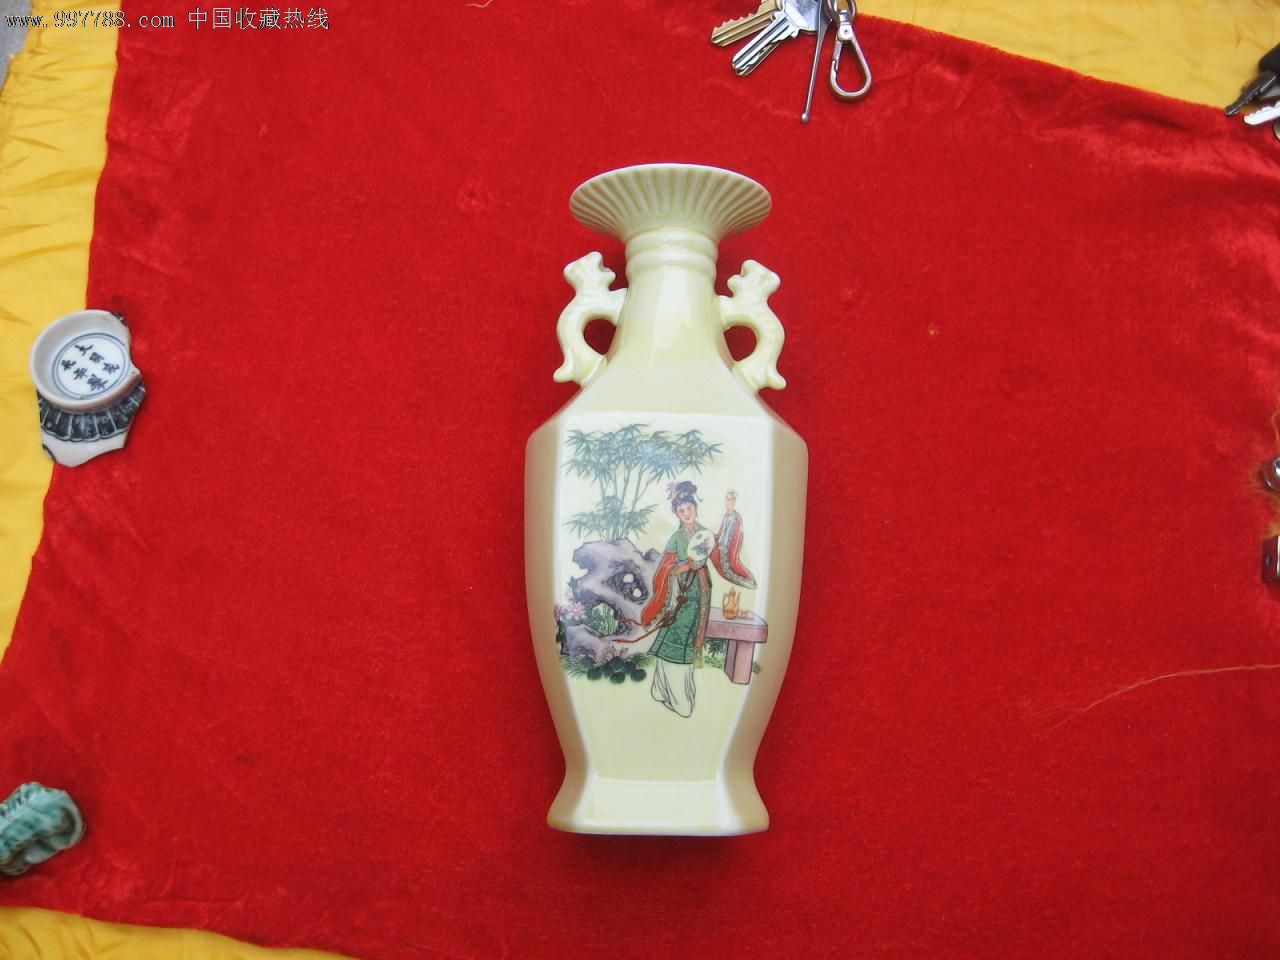 【酒瓶收藏】早期孩童寿星仙女人物一斤装酒瓶(完美品)